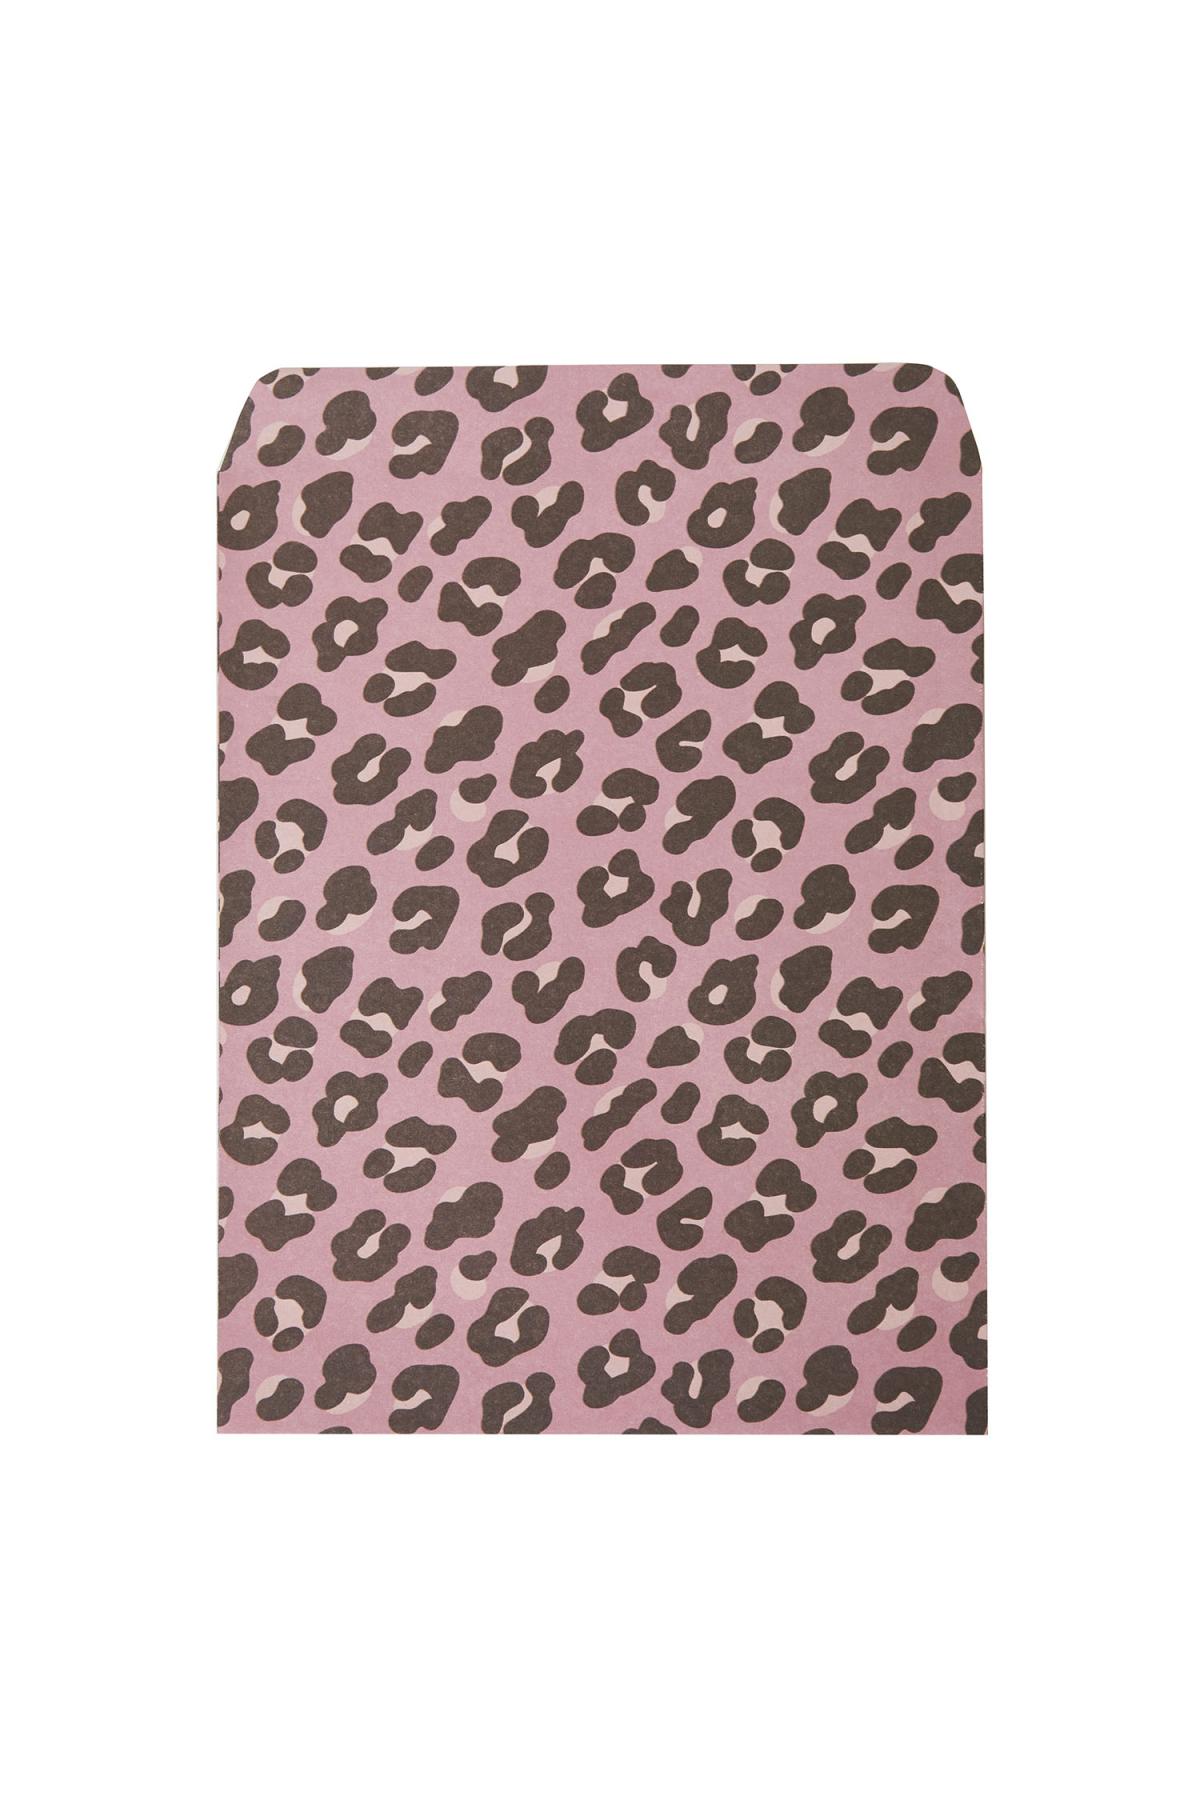 Gift Bag Pink Leopard Large Paper